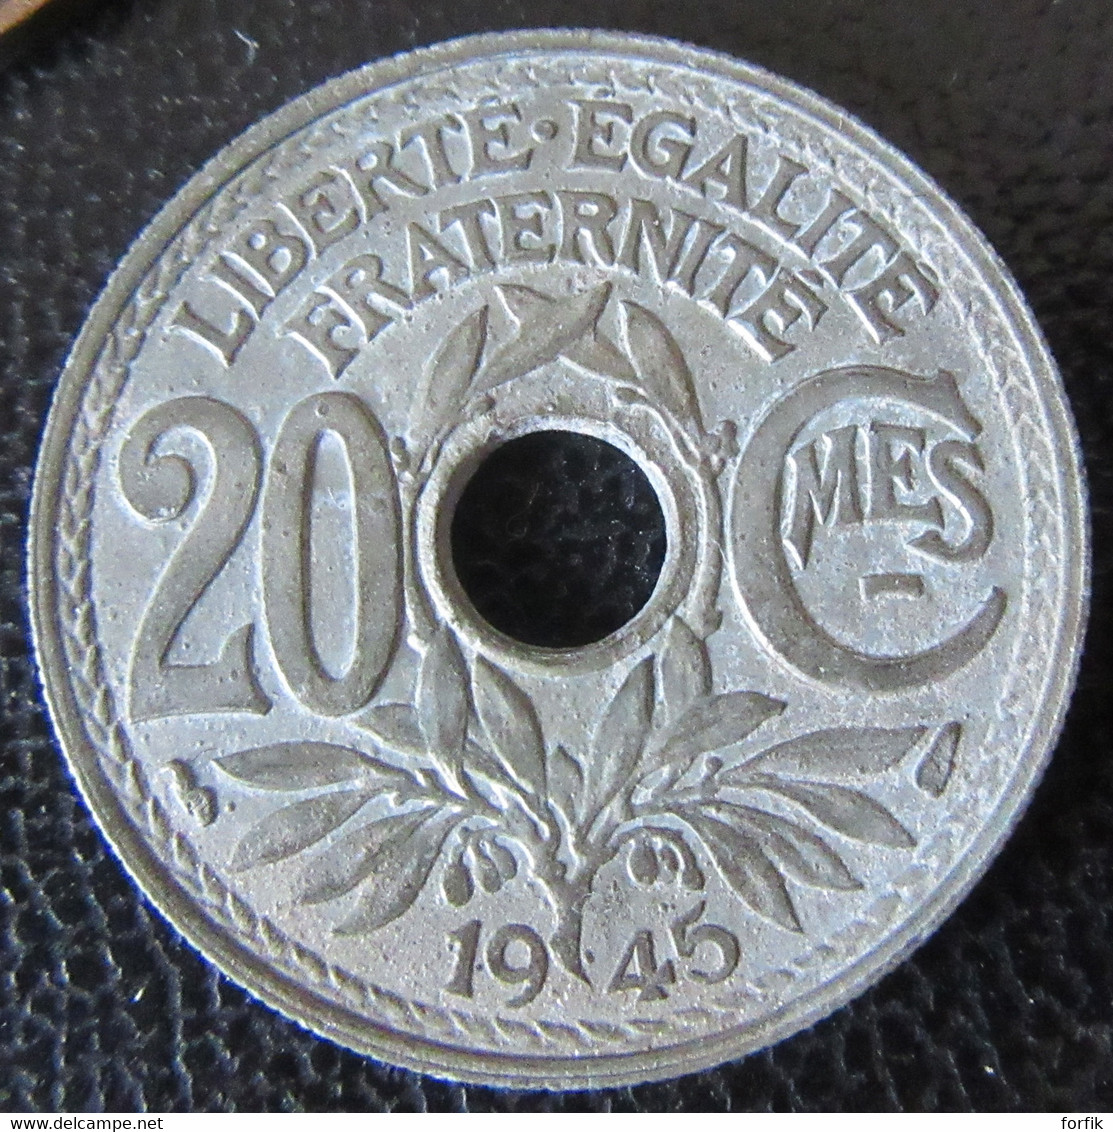 France - Lot de 25 Monnaies entre 1797 (An 5) et 1945 dont 1 Franc Semeuse 1916 en argent et 20 Cts 1945 en zinc